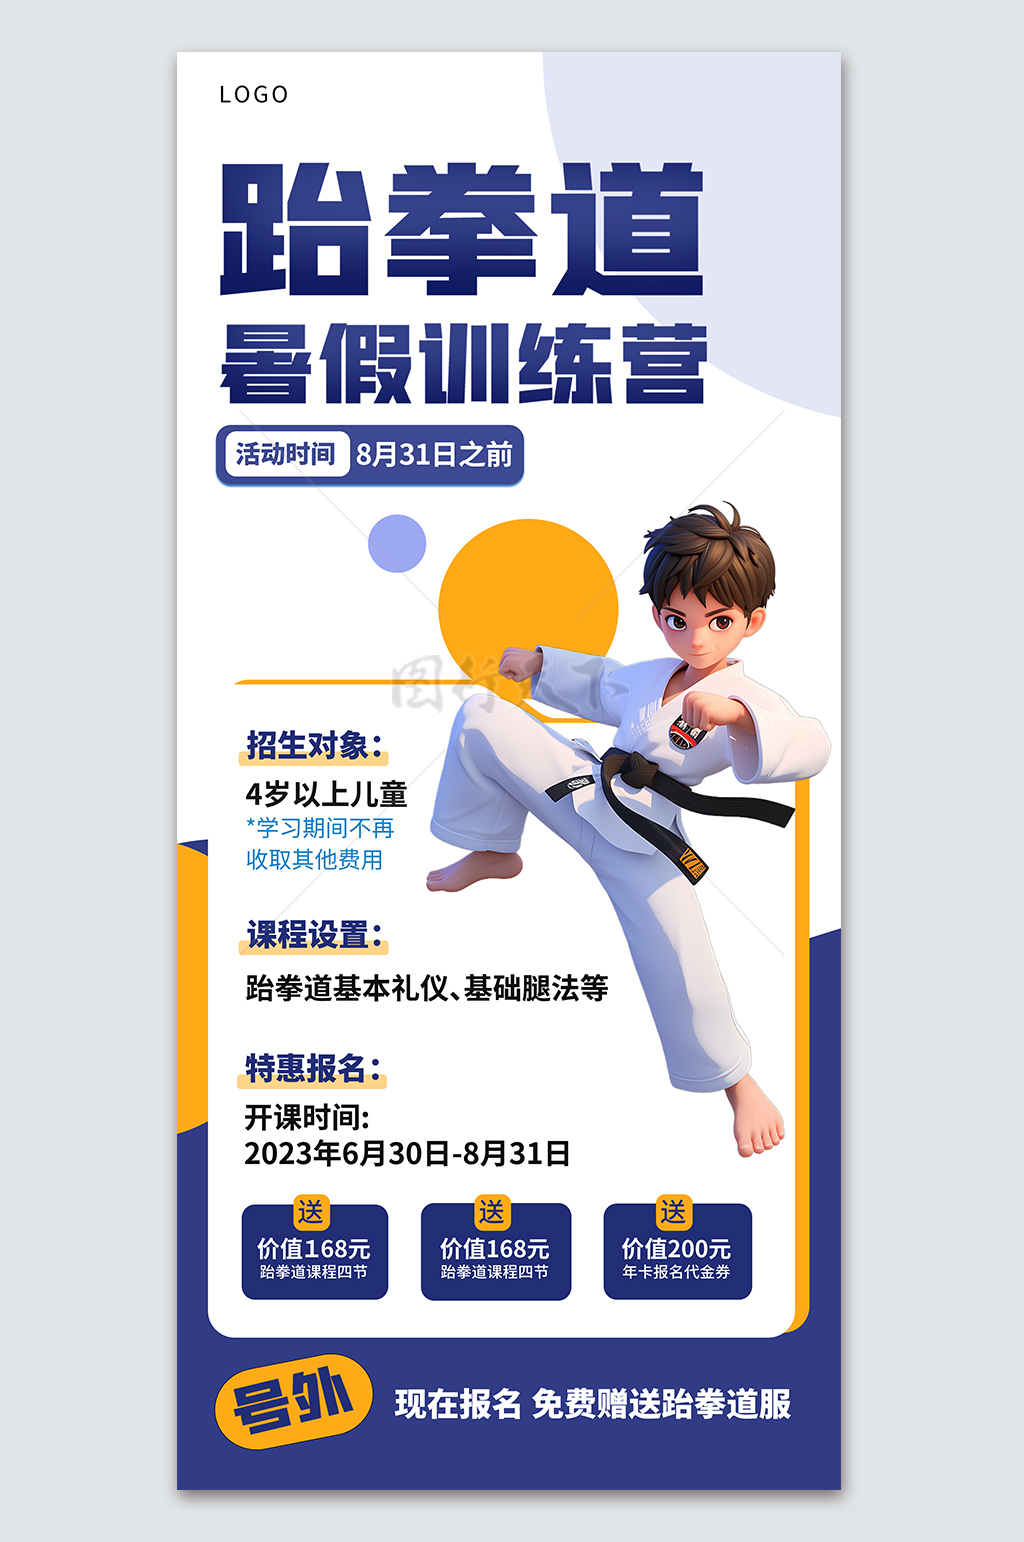 少儿跆拳道暑期班招新宣传海报